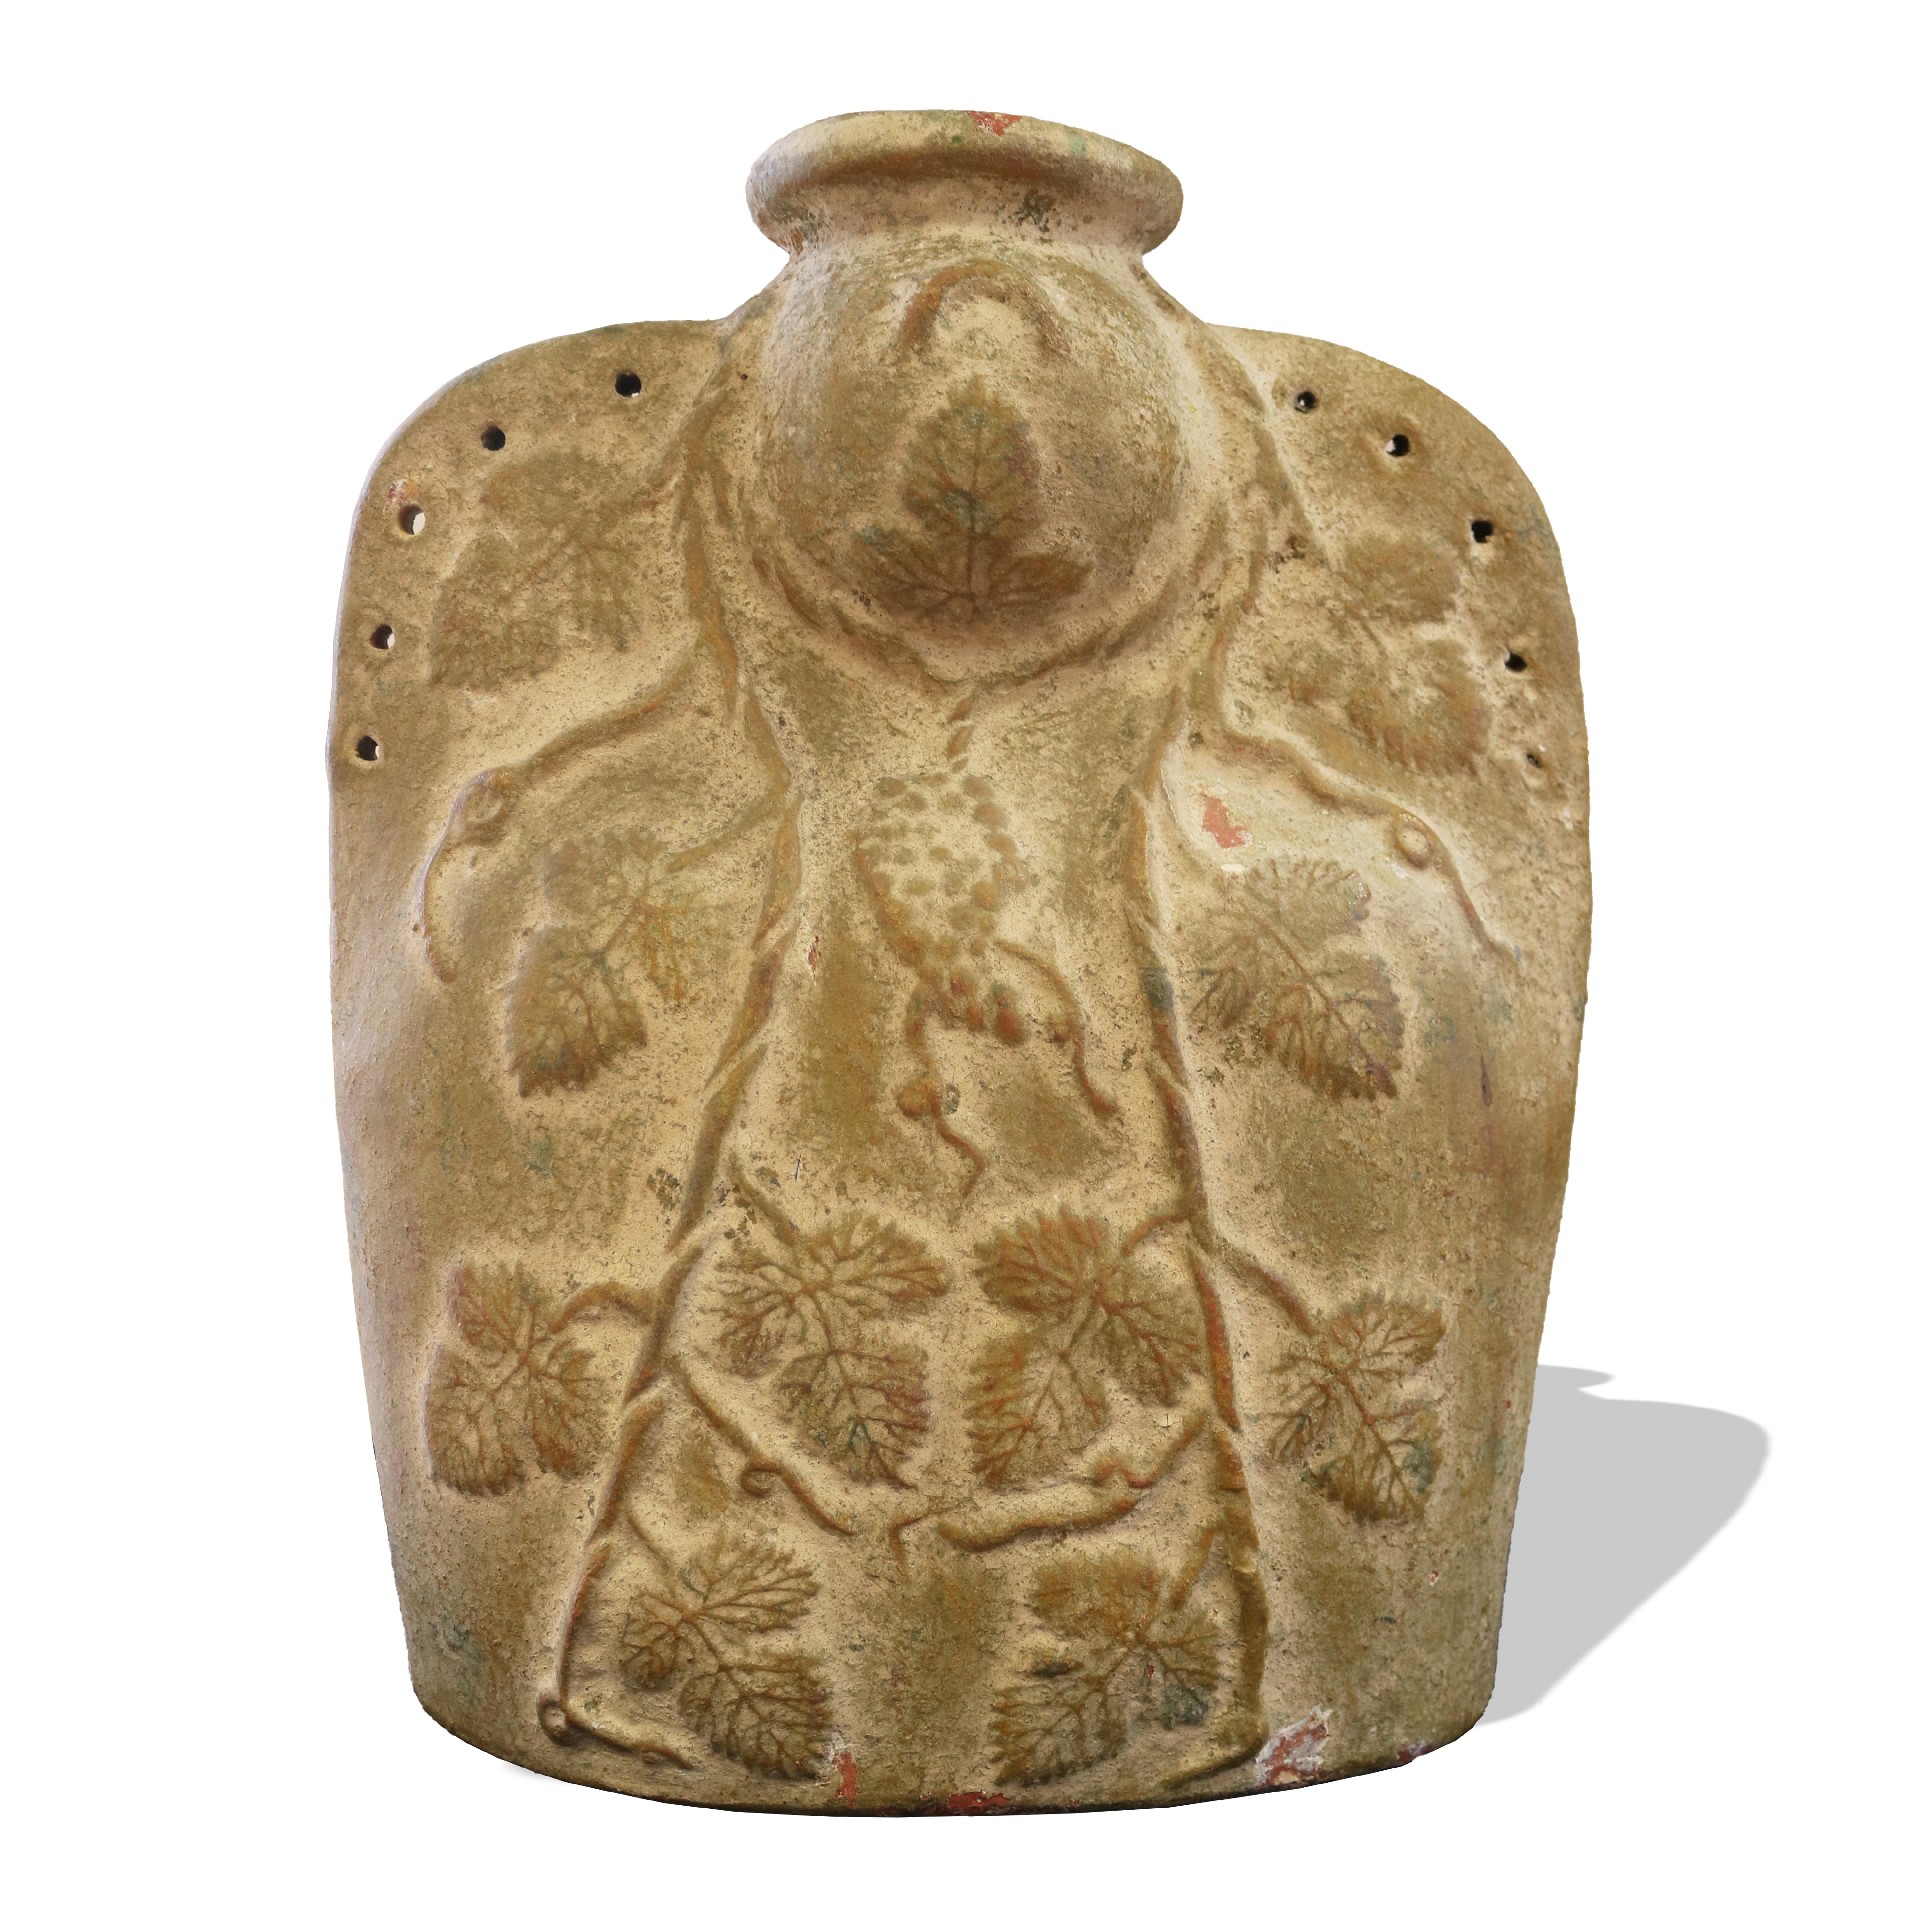 Antica Fiasca in terracotta. - Ceramiche - Oggettistica - Prodotti - Antichità Fiorillo